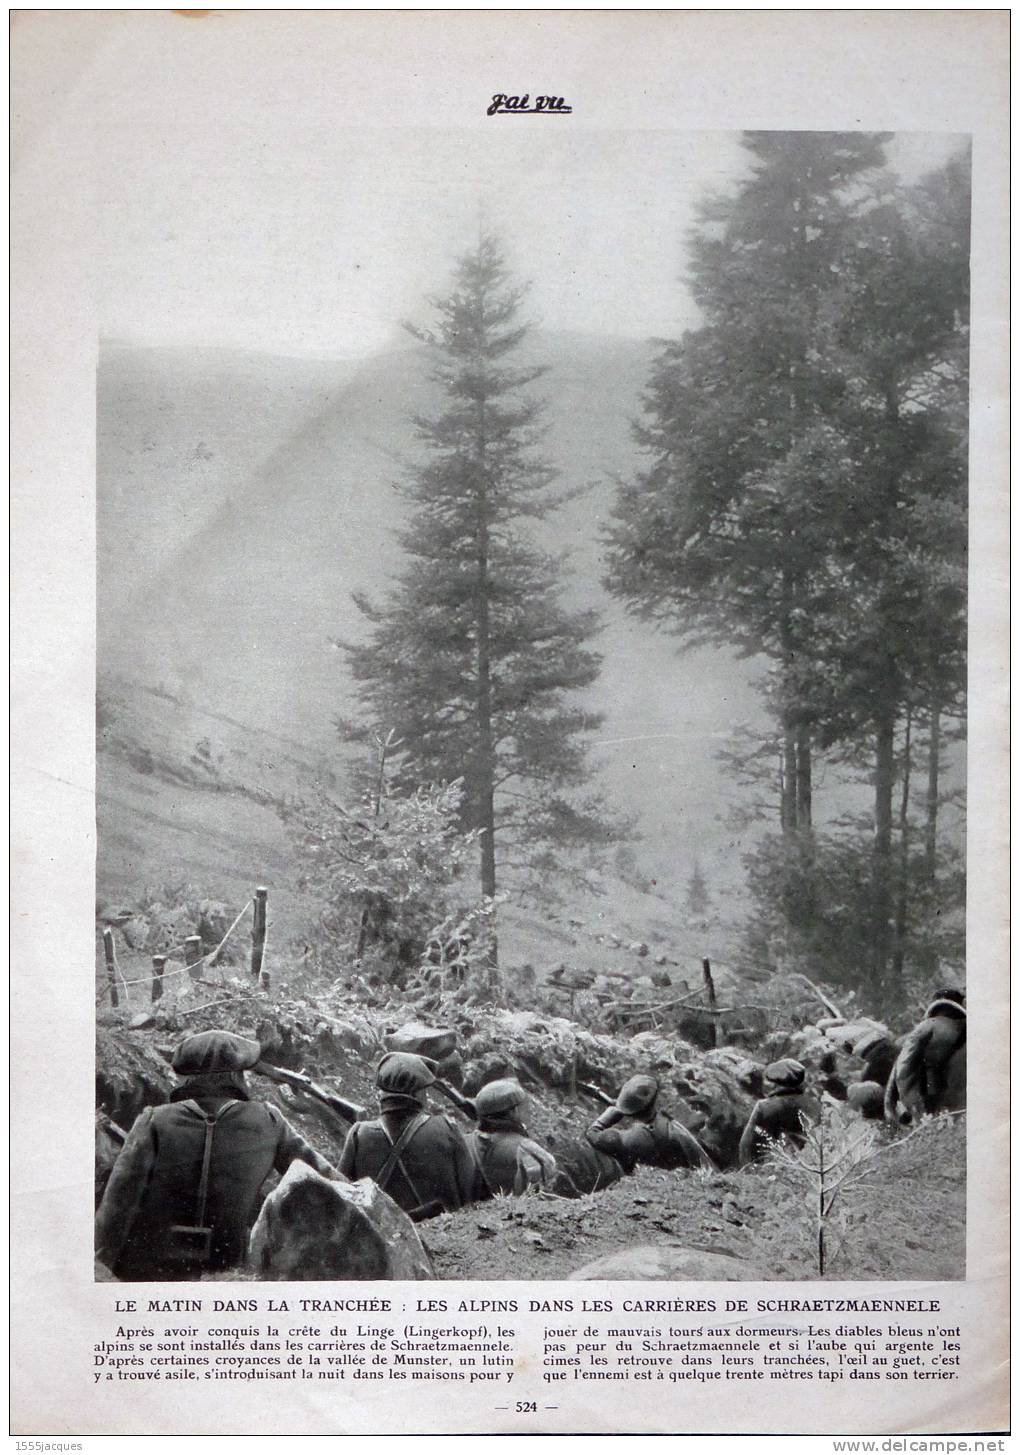 Le matin dans les tranchées : les Alpins dans les carrières de Schraetzmaennele (site images-01.delcampe-static.net) 